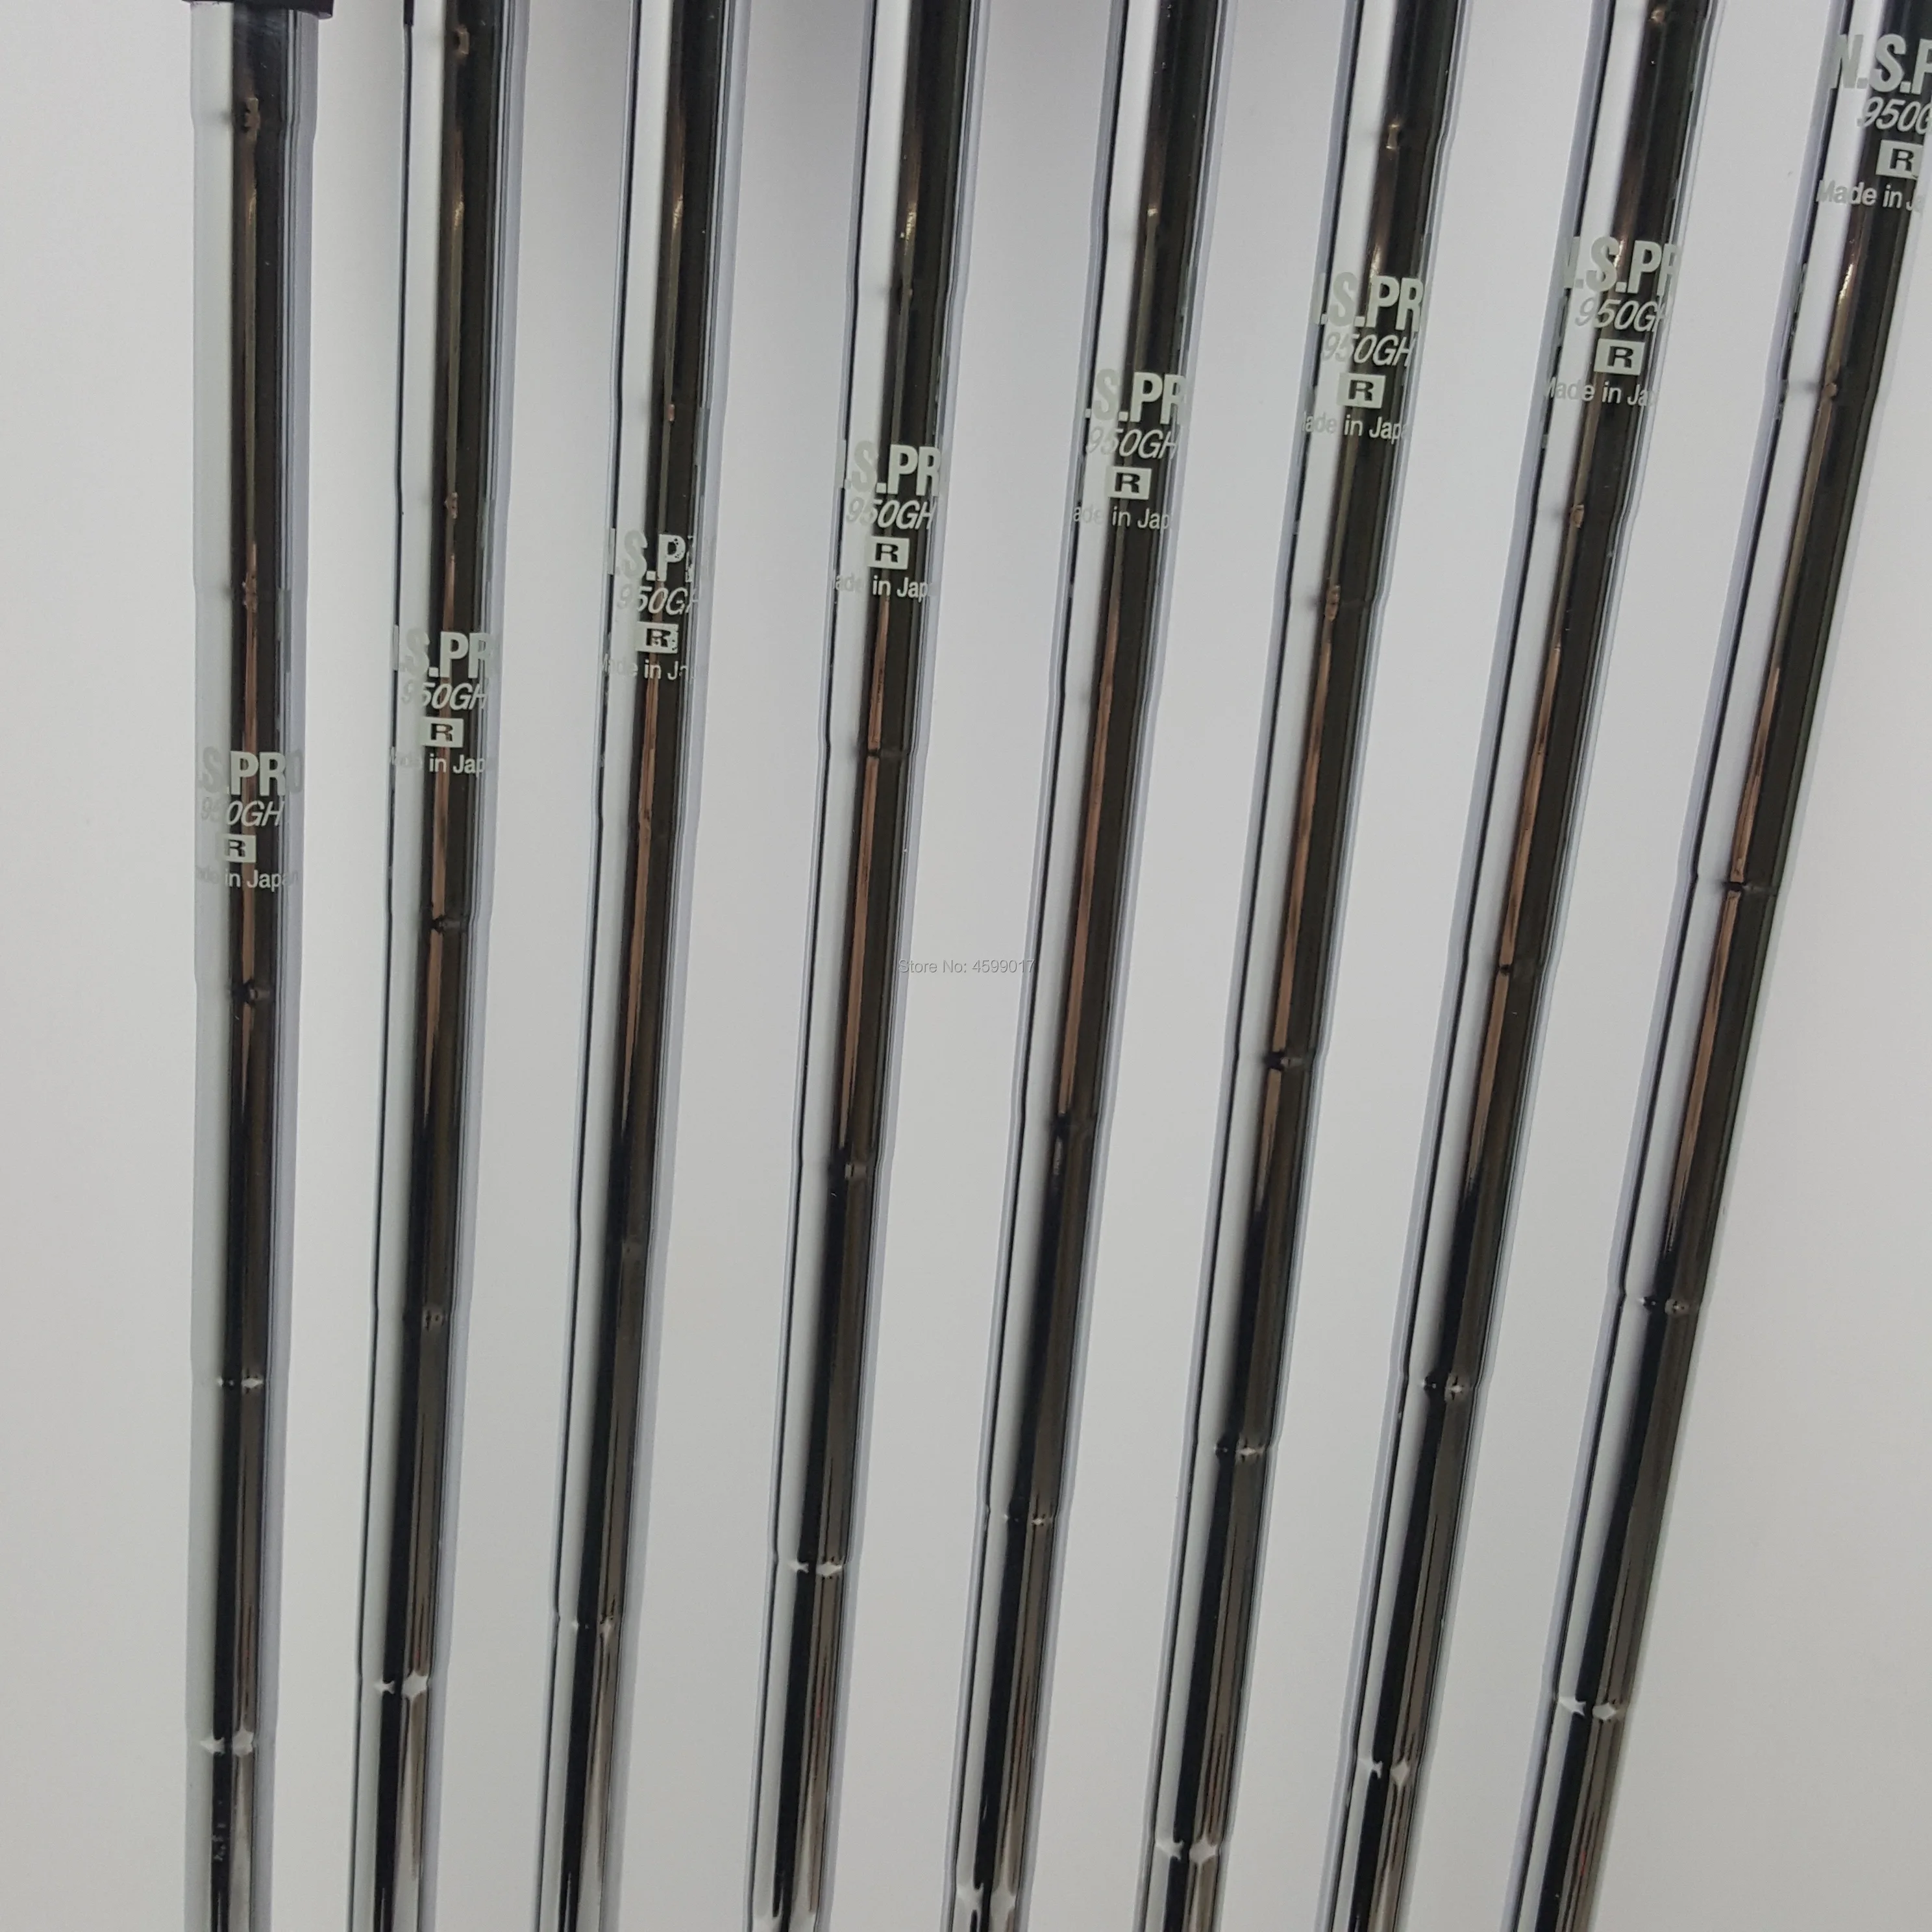 Клюшки для гольфа набор утюгов HONMA TW737V набор для гольфа 4-9 10 клубов NS. PRO стальной графитовая клюшка для гольфа R/S Flex Бесплатная доставка